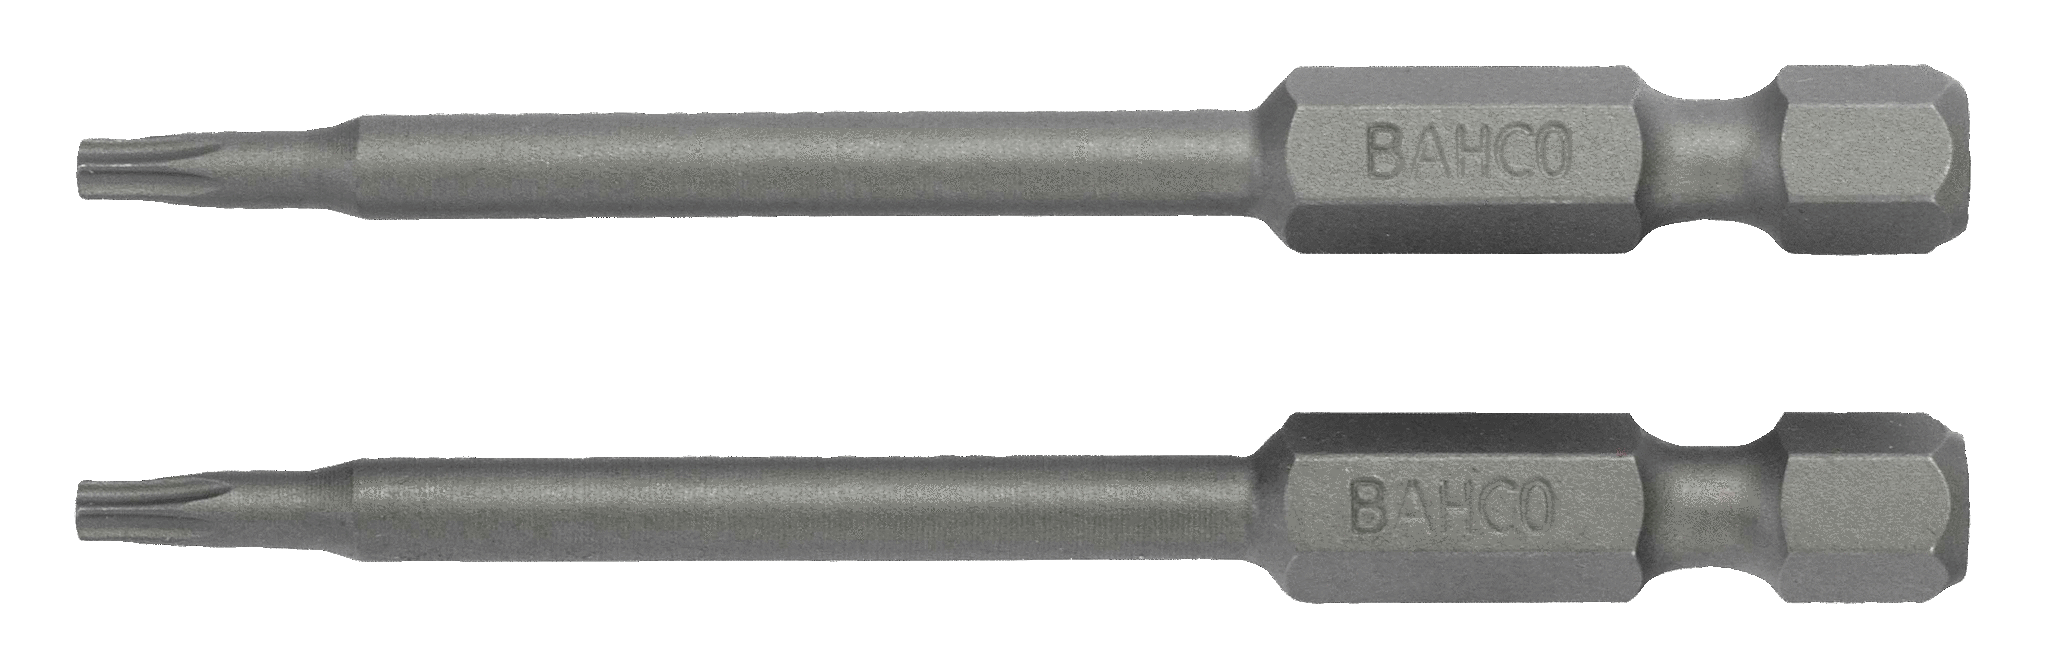 картинка Стандартные биты для отверток Torx®, 70 мм BAHCO 59S/70T10 от магазина "Элит-инструмент"